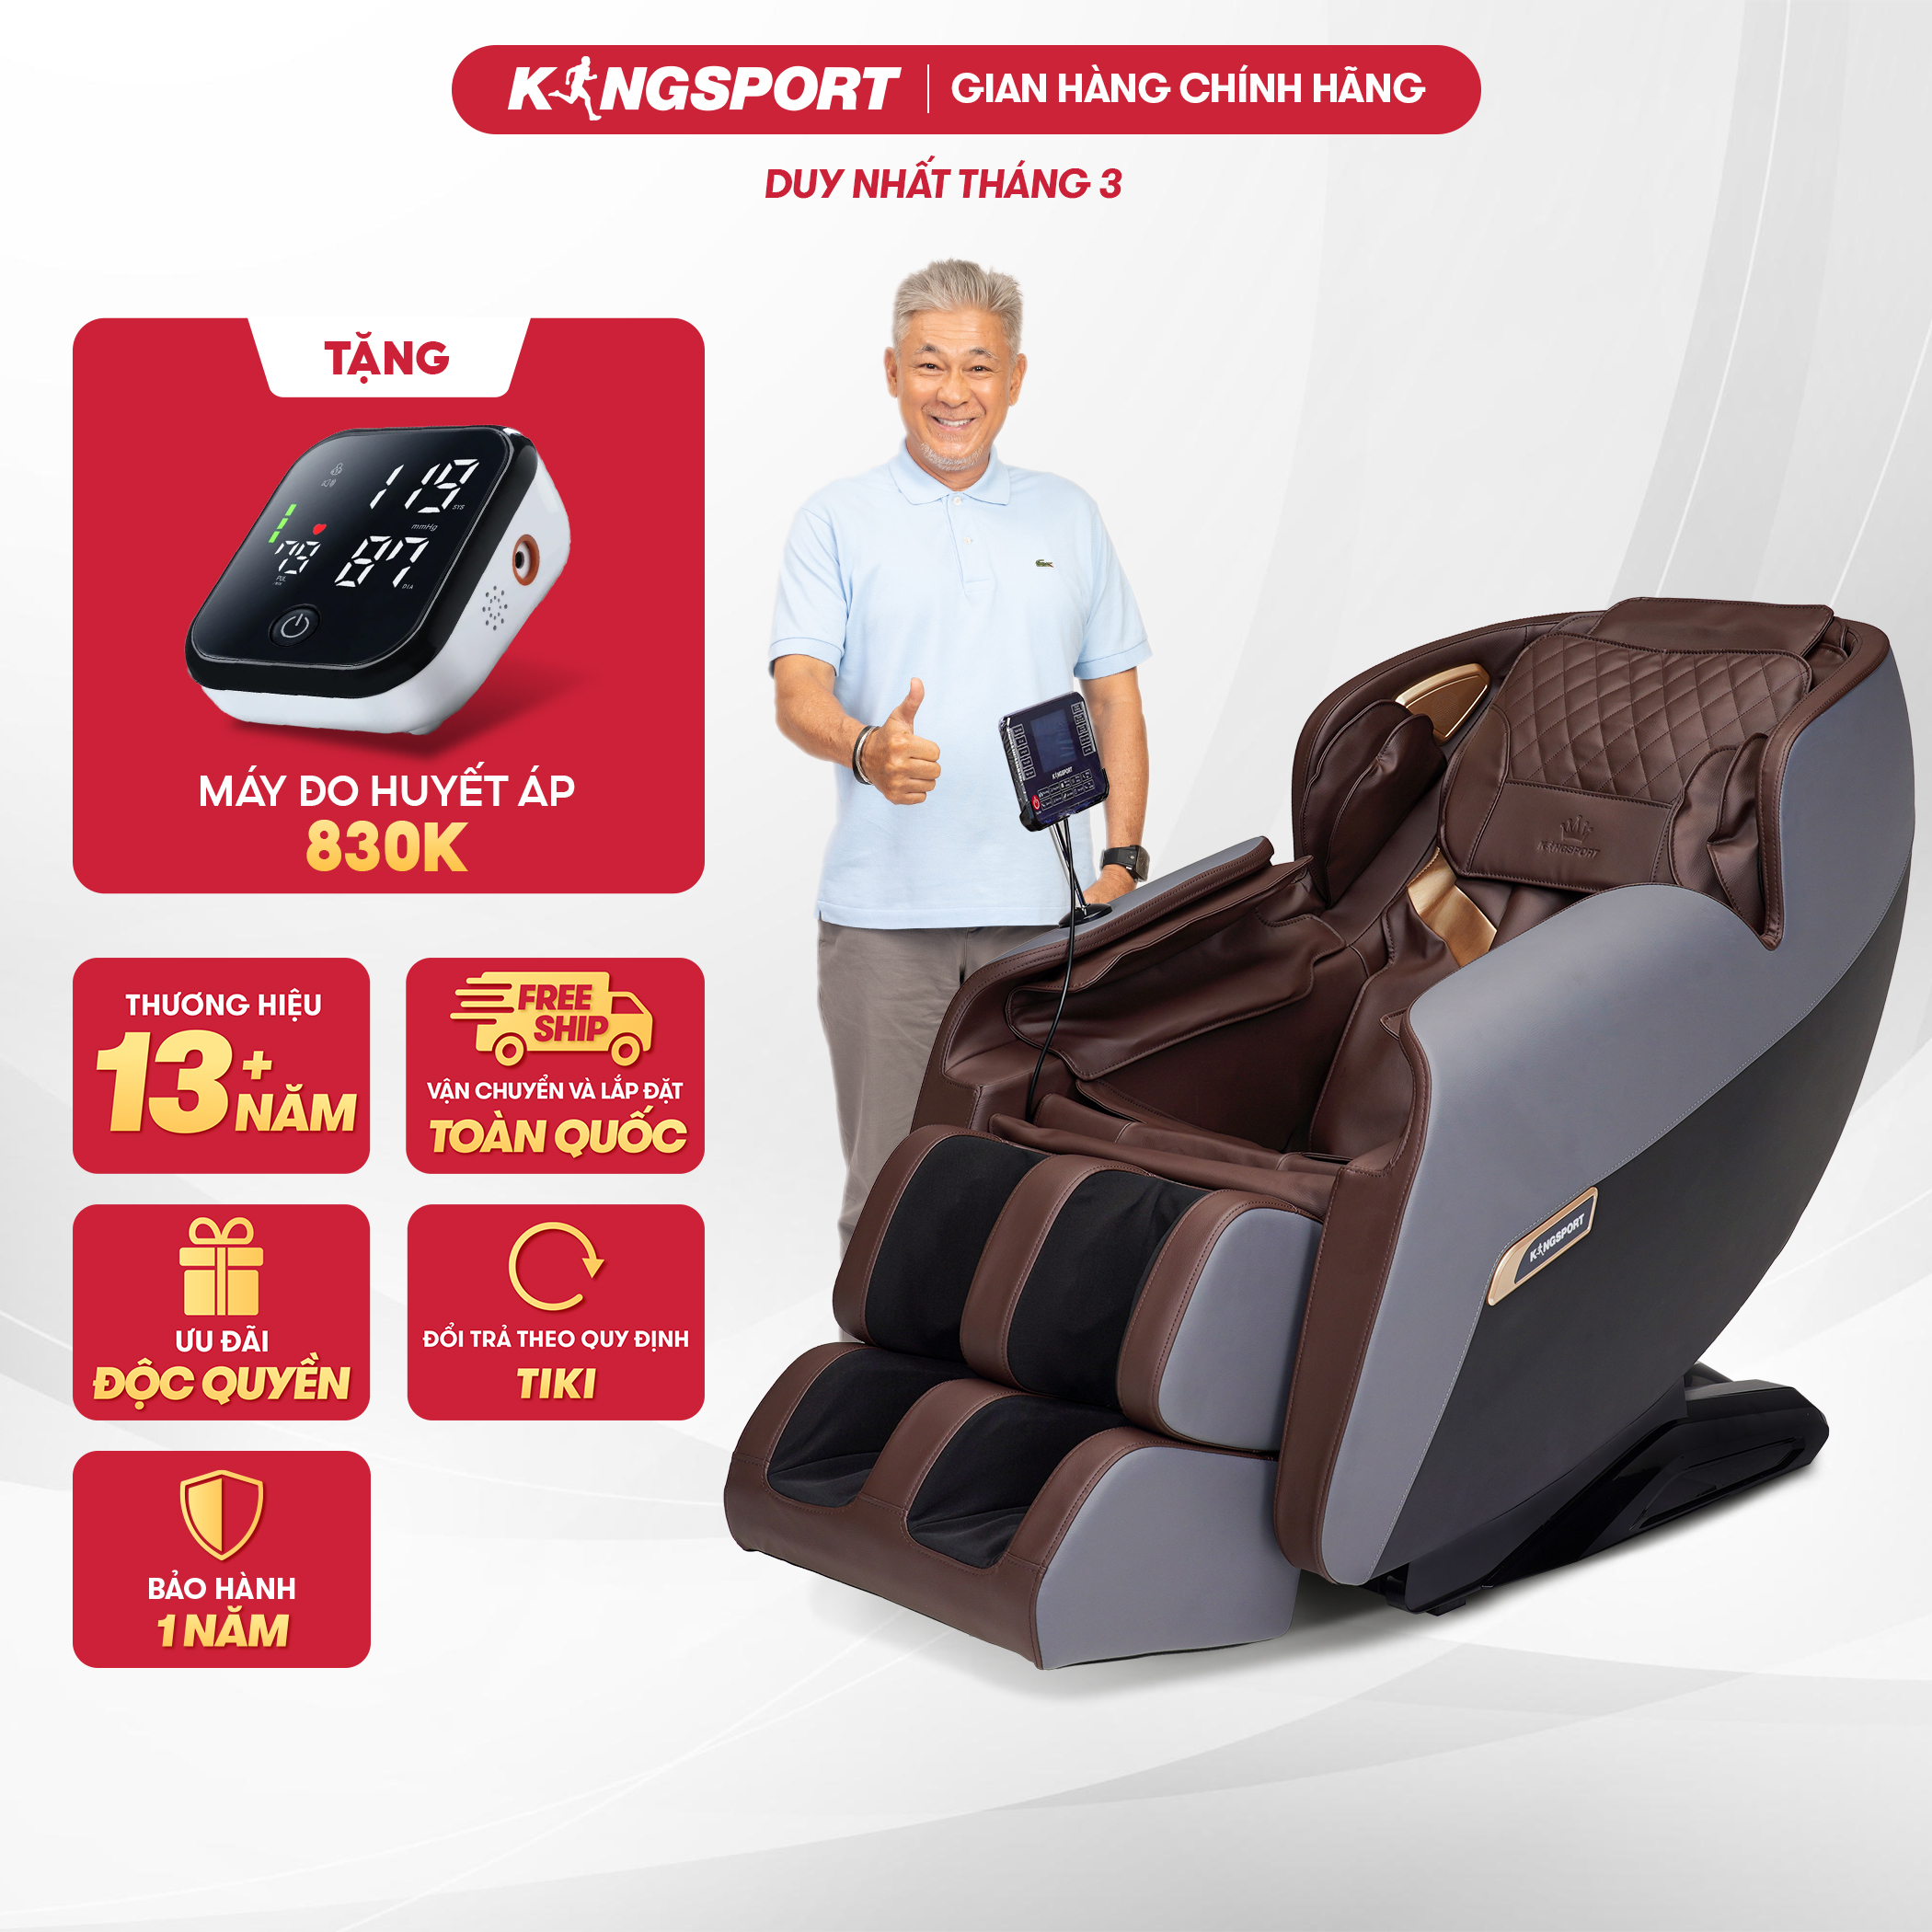 Ghế massage KINGSPORT G82 hệ thống nhiệt hồng ngoại, chế độ massage không trọng lực, khung ghế rộng rãi và thoải mái